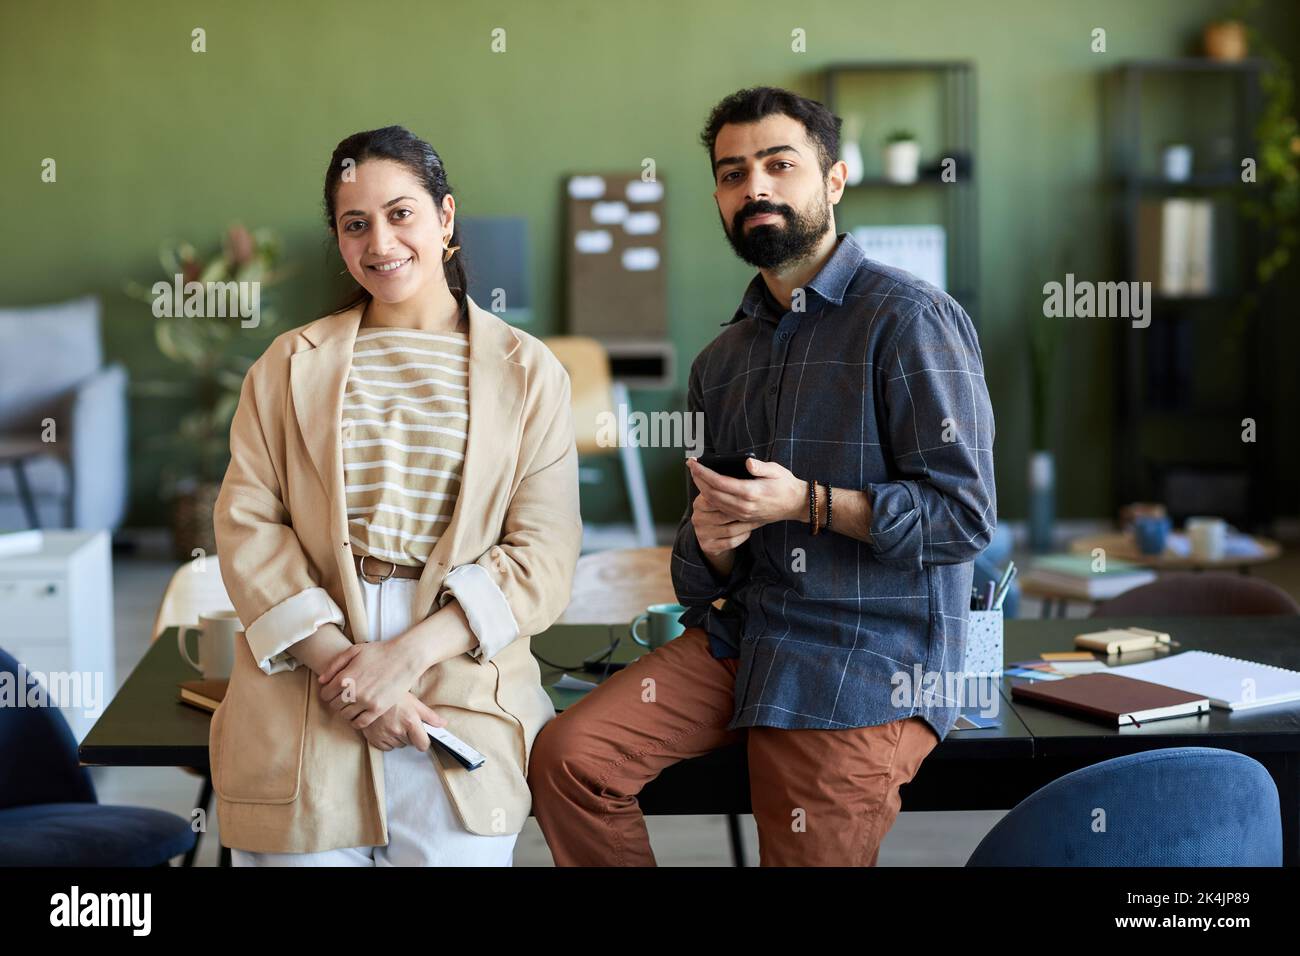 Zwei junge, erfolgreiche Designer oder Angestellte in eleganter Casualwear, die am Arbeitsplatz stehen und die Kamera betrachten Stockfoto